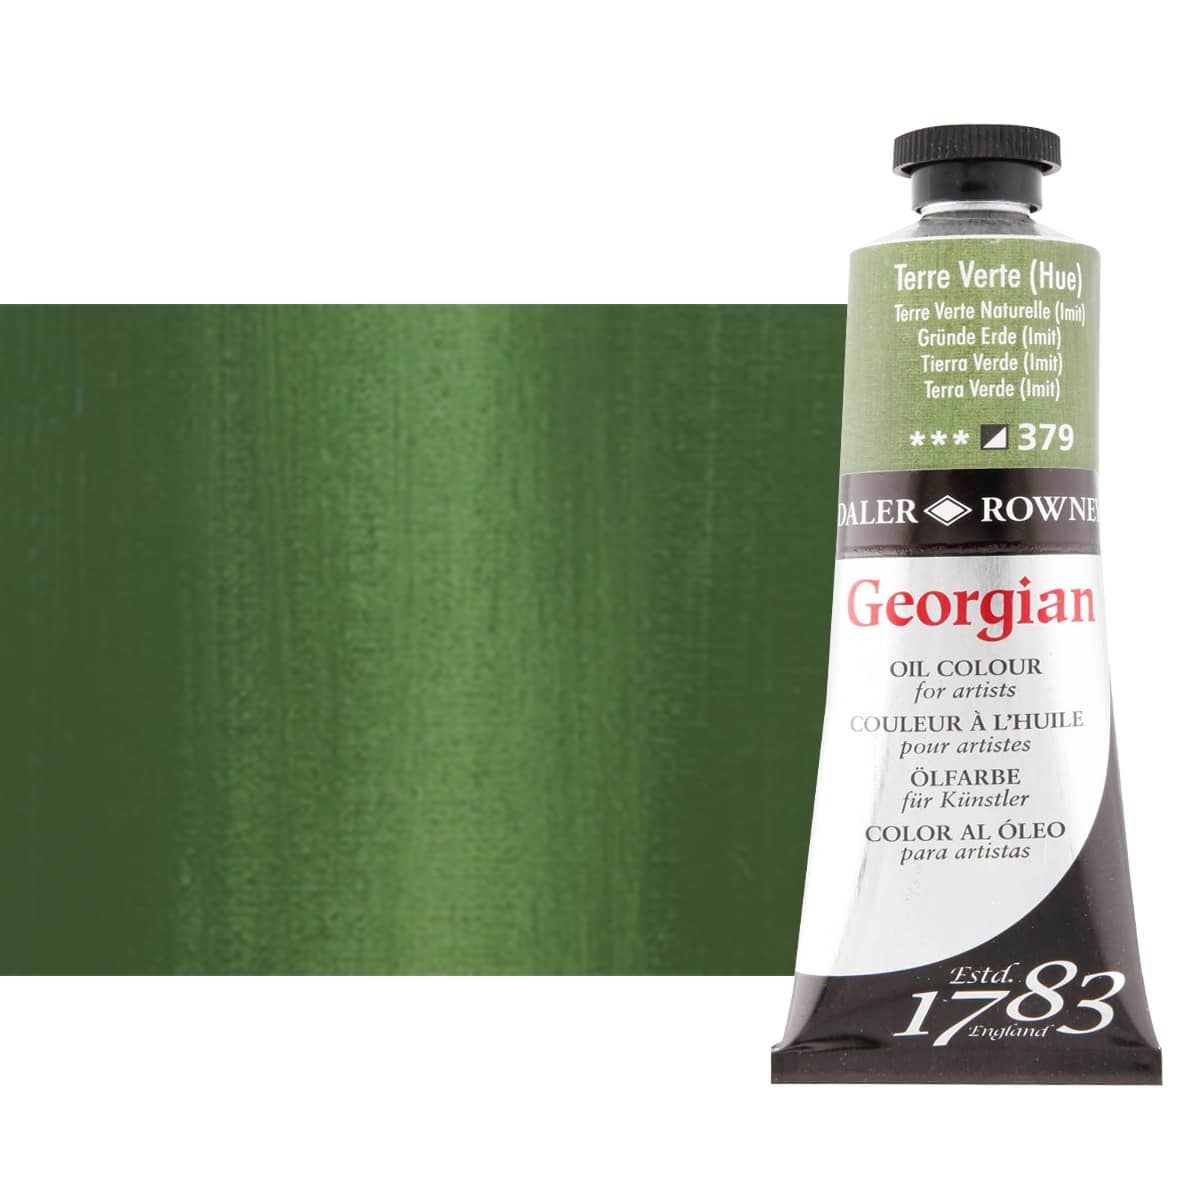 Daler-Rowney Georgian Oil Color 38ml Tube - Terre Verte